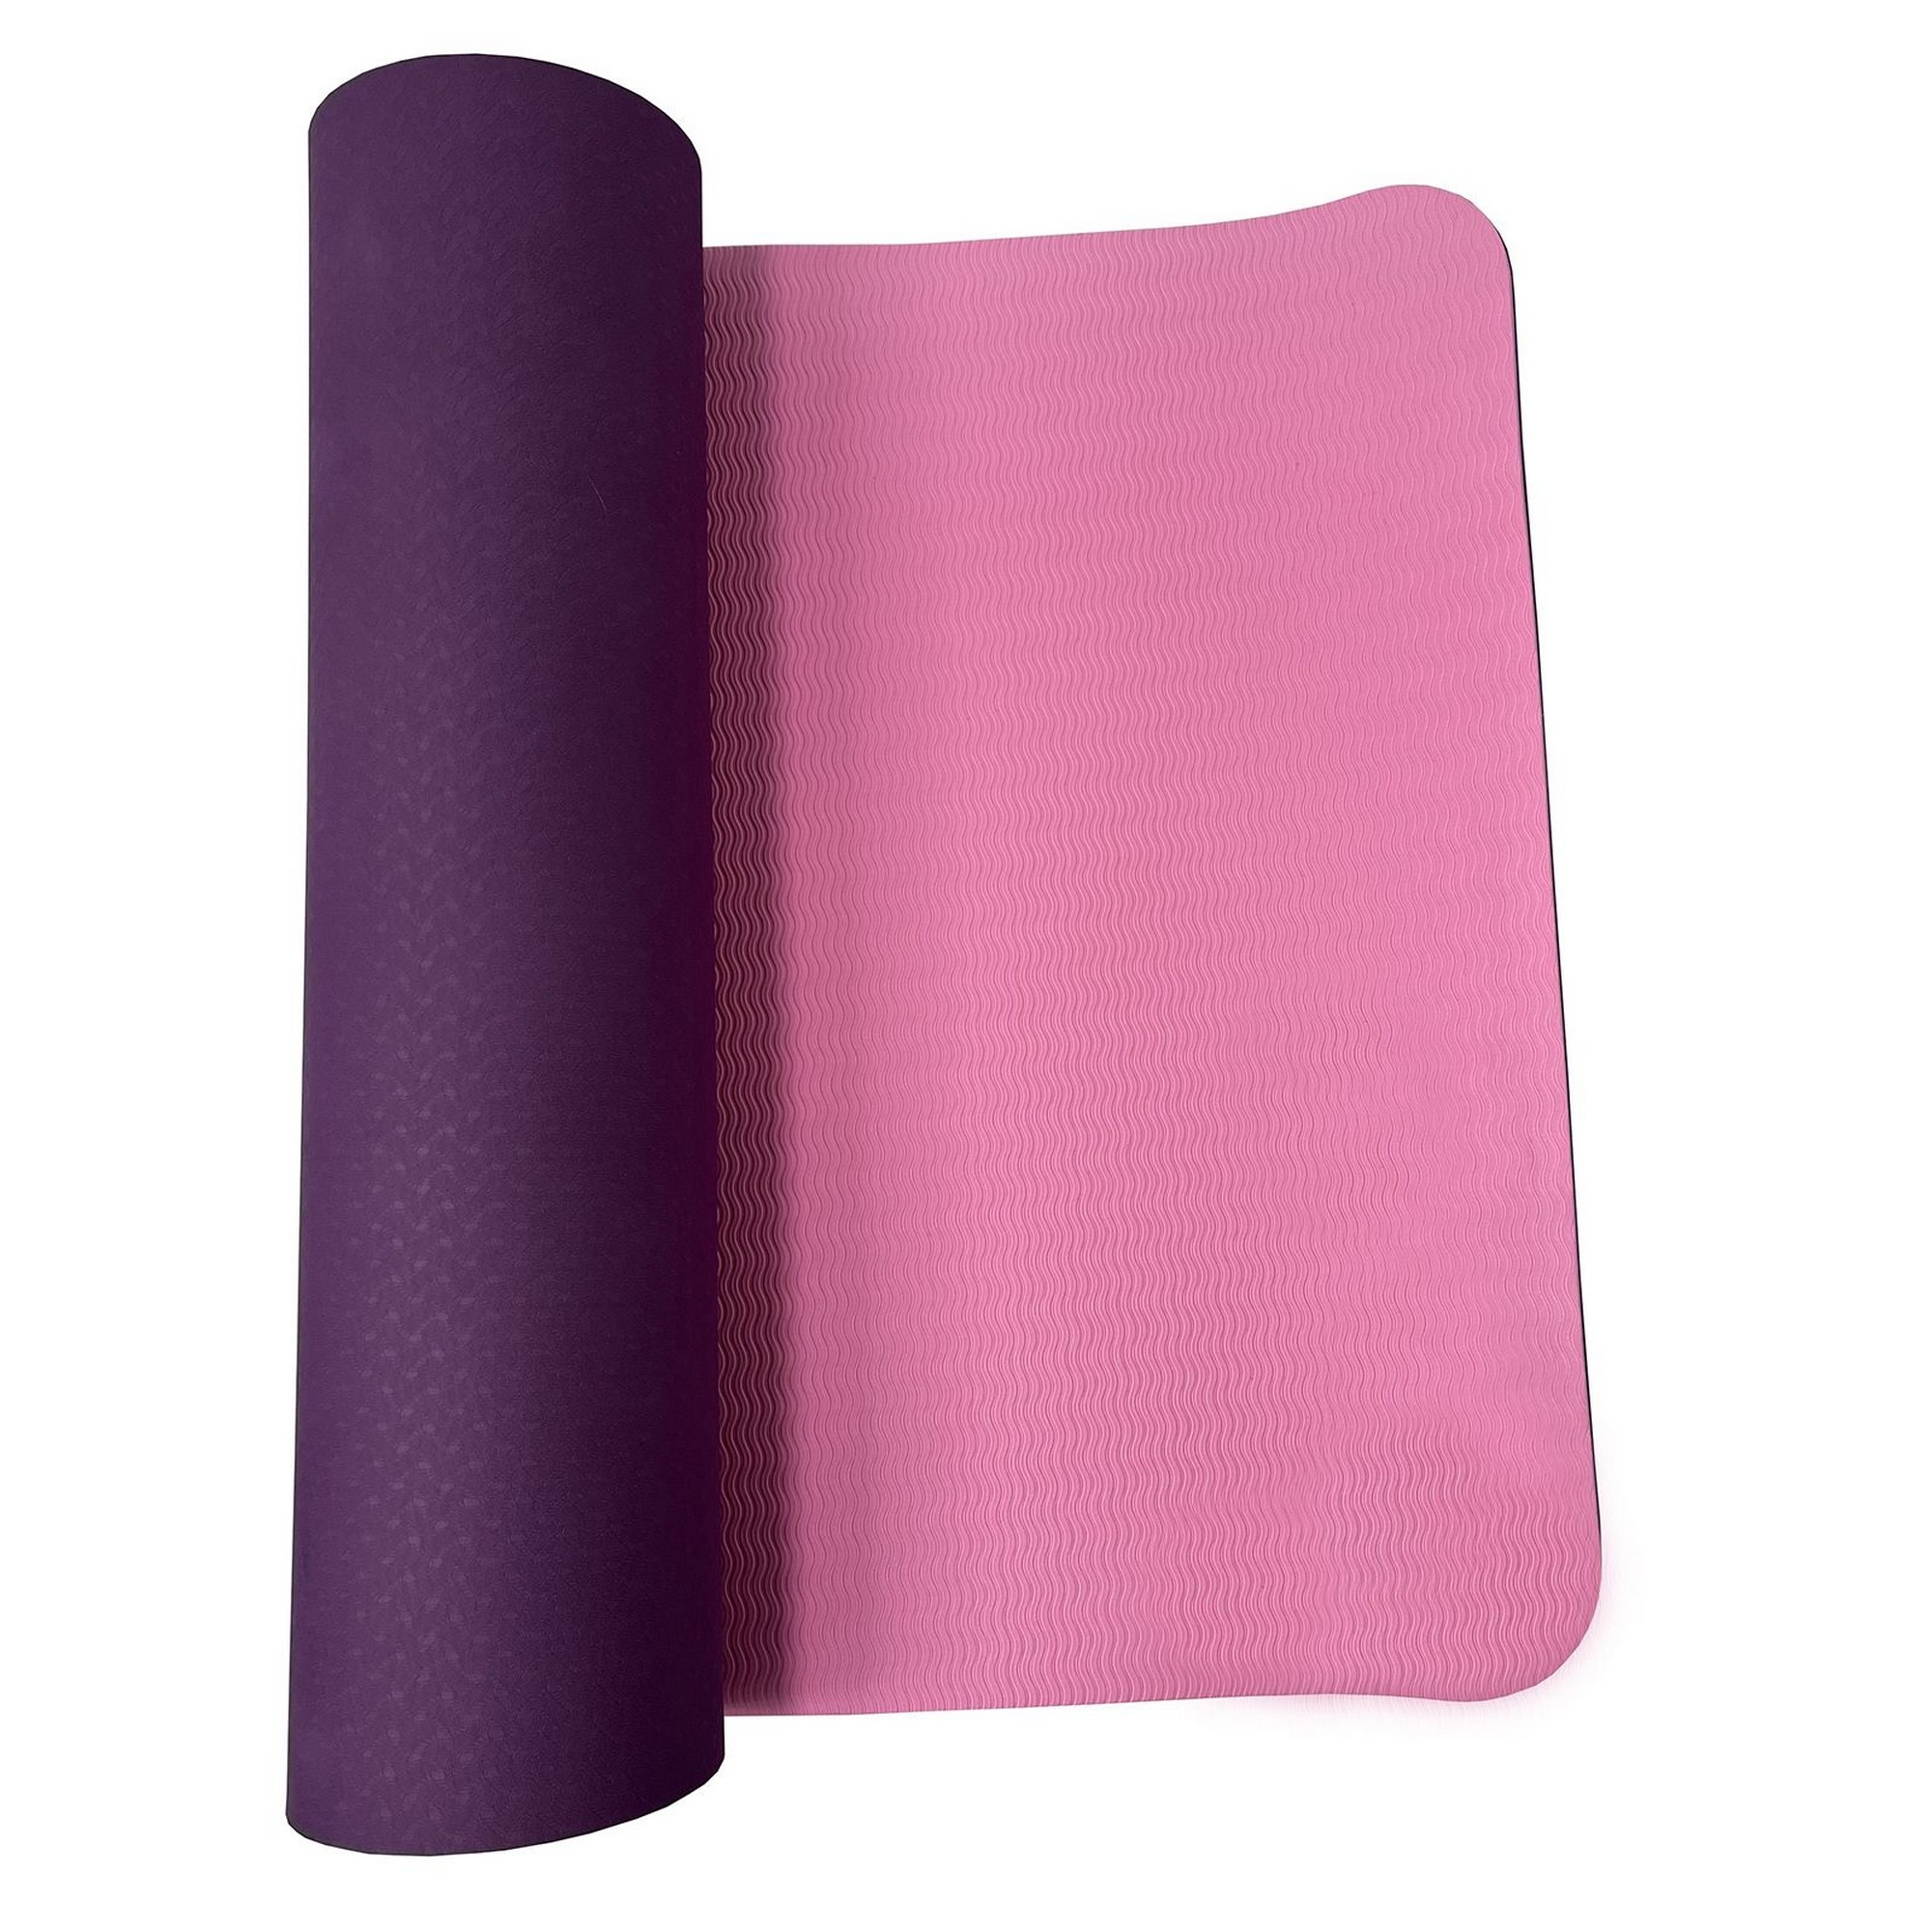 Коврик для йоги и фитнеса  двусторонний, 180х61х0,6см UnixFit YMU6MMVT фиолетовый 2000_2000